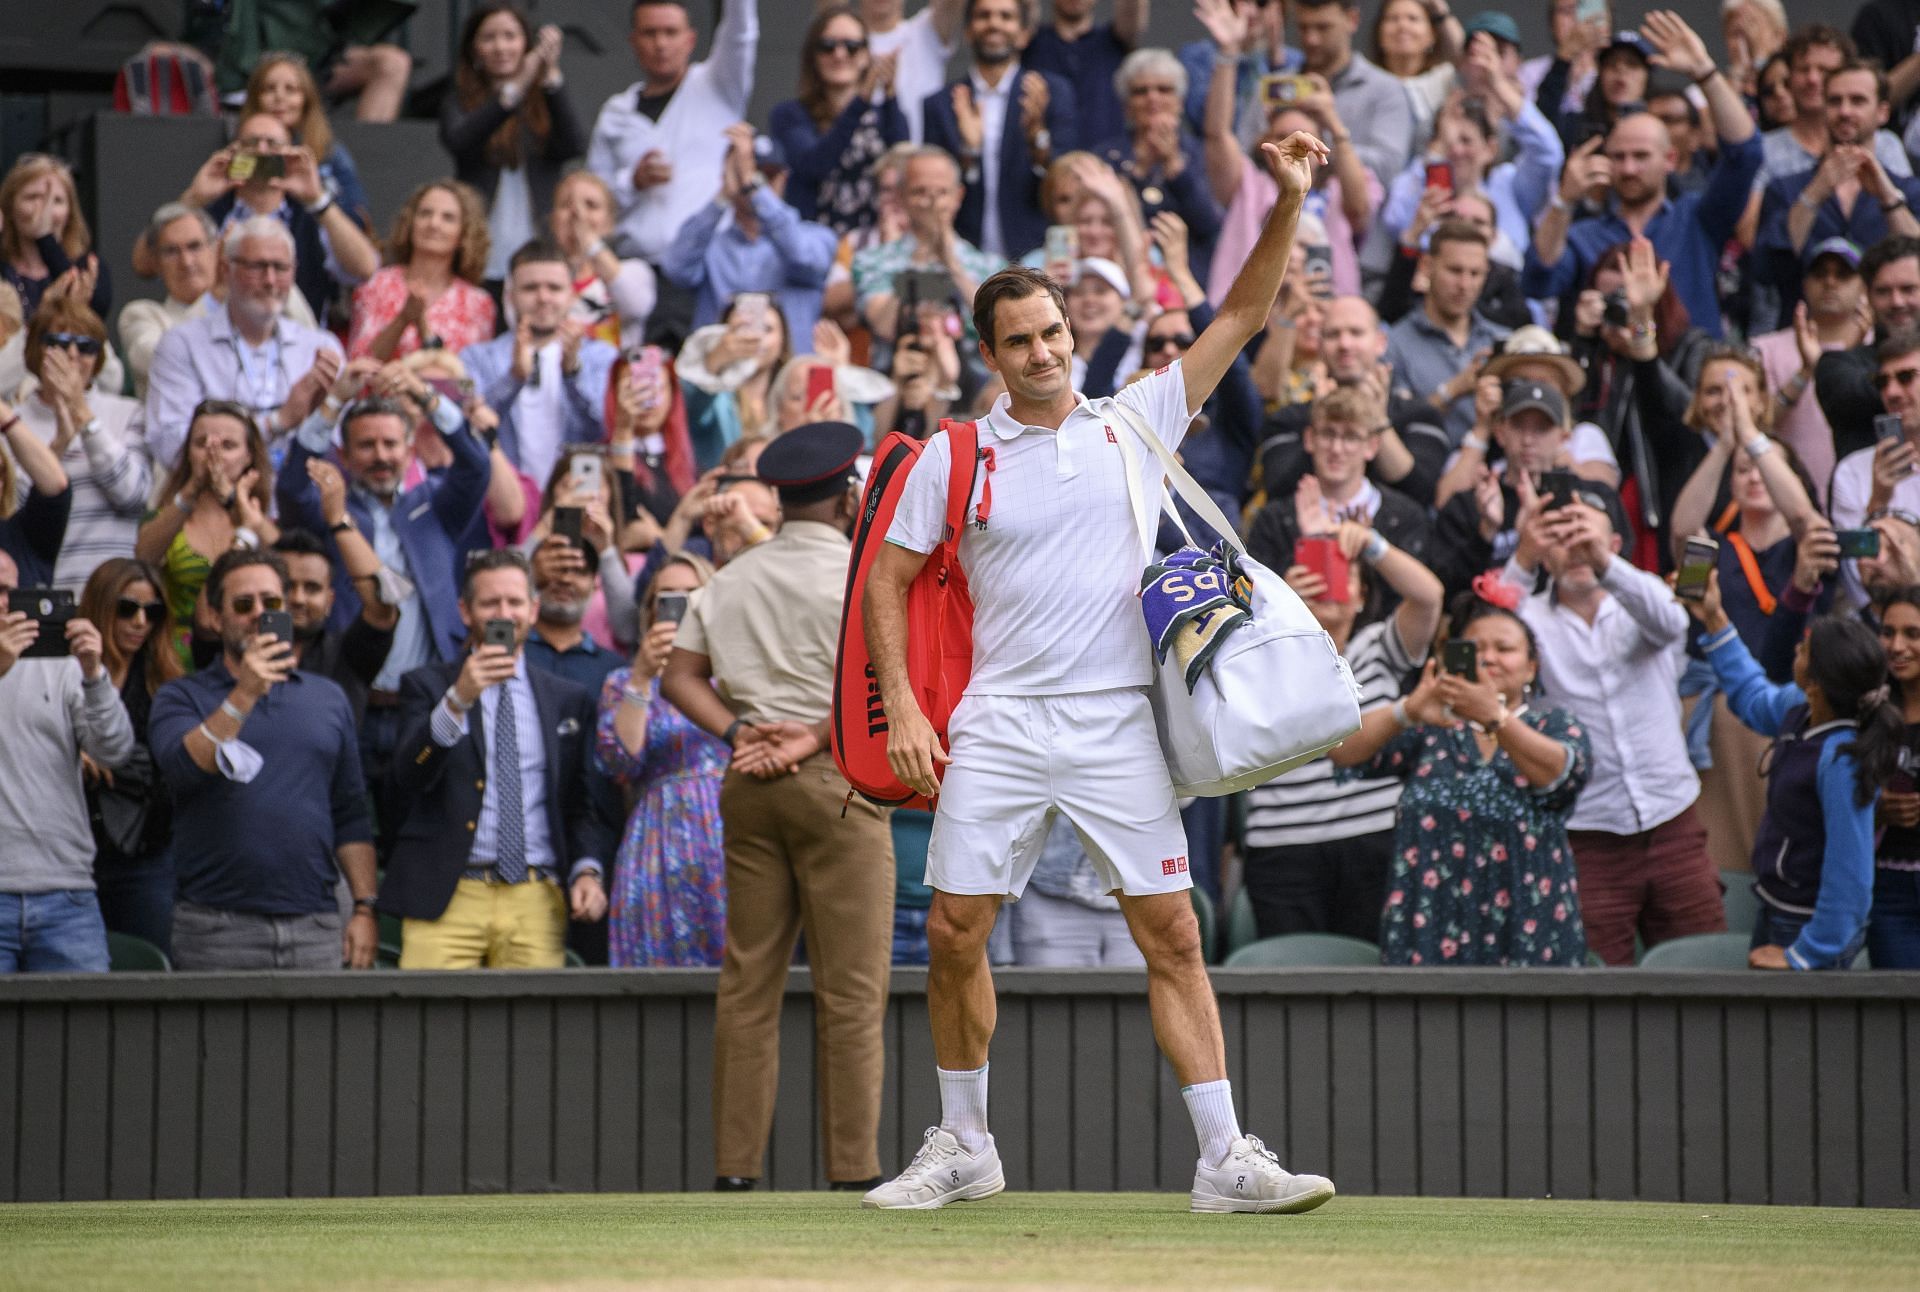 Roger Federer waves goodbye at Wimbledon